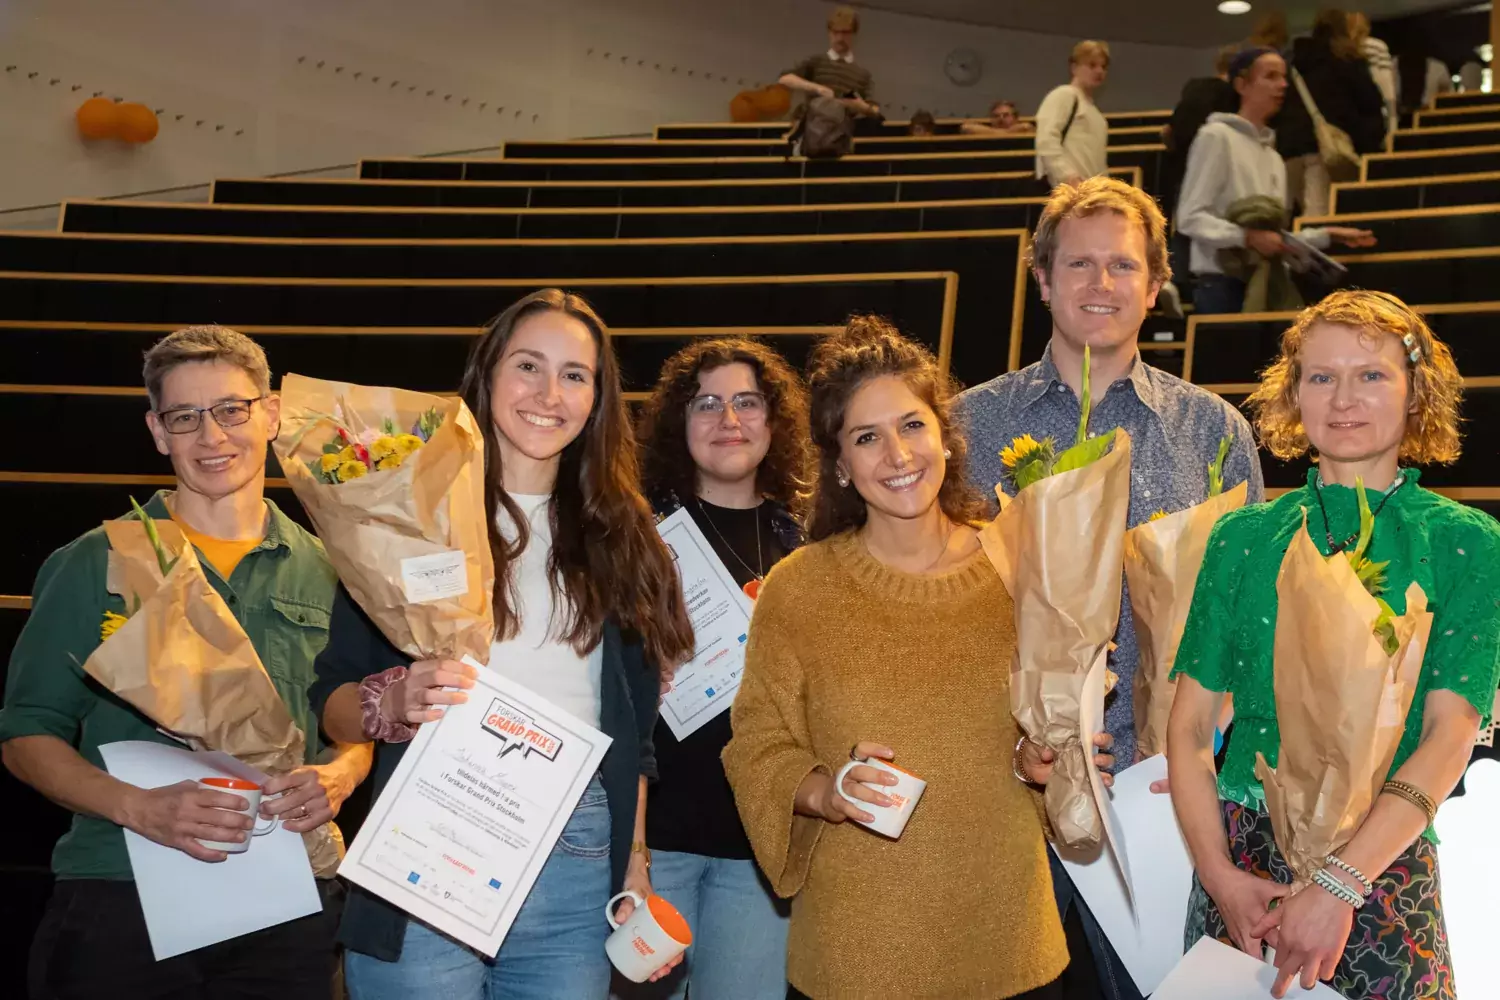 Johanna Mayer, andra från vänster, vann delfinalen i Forskar Grand Prix den 29 september 2023. Johanna ståe med diplom och blommor omgiven av de andra tävlande i Forskar Grand Prix.mgiven av de andra tävlande